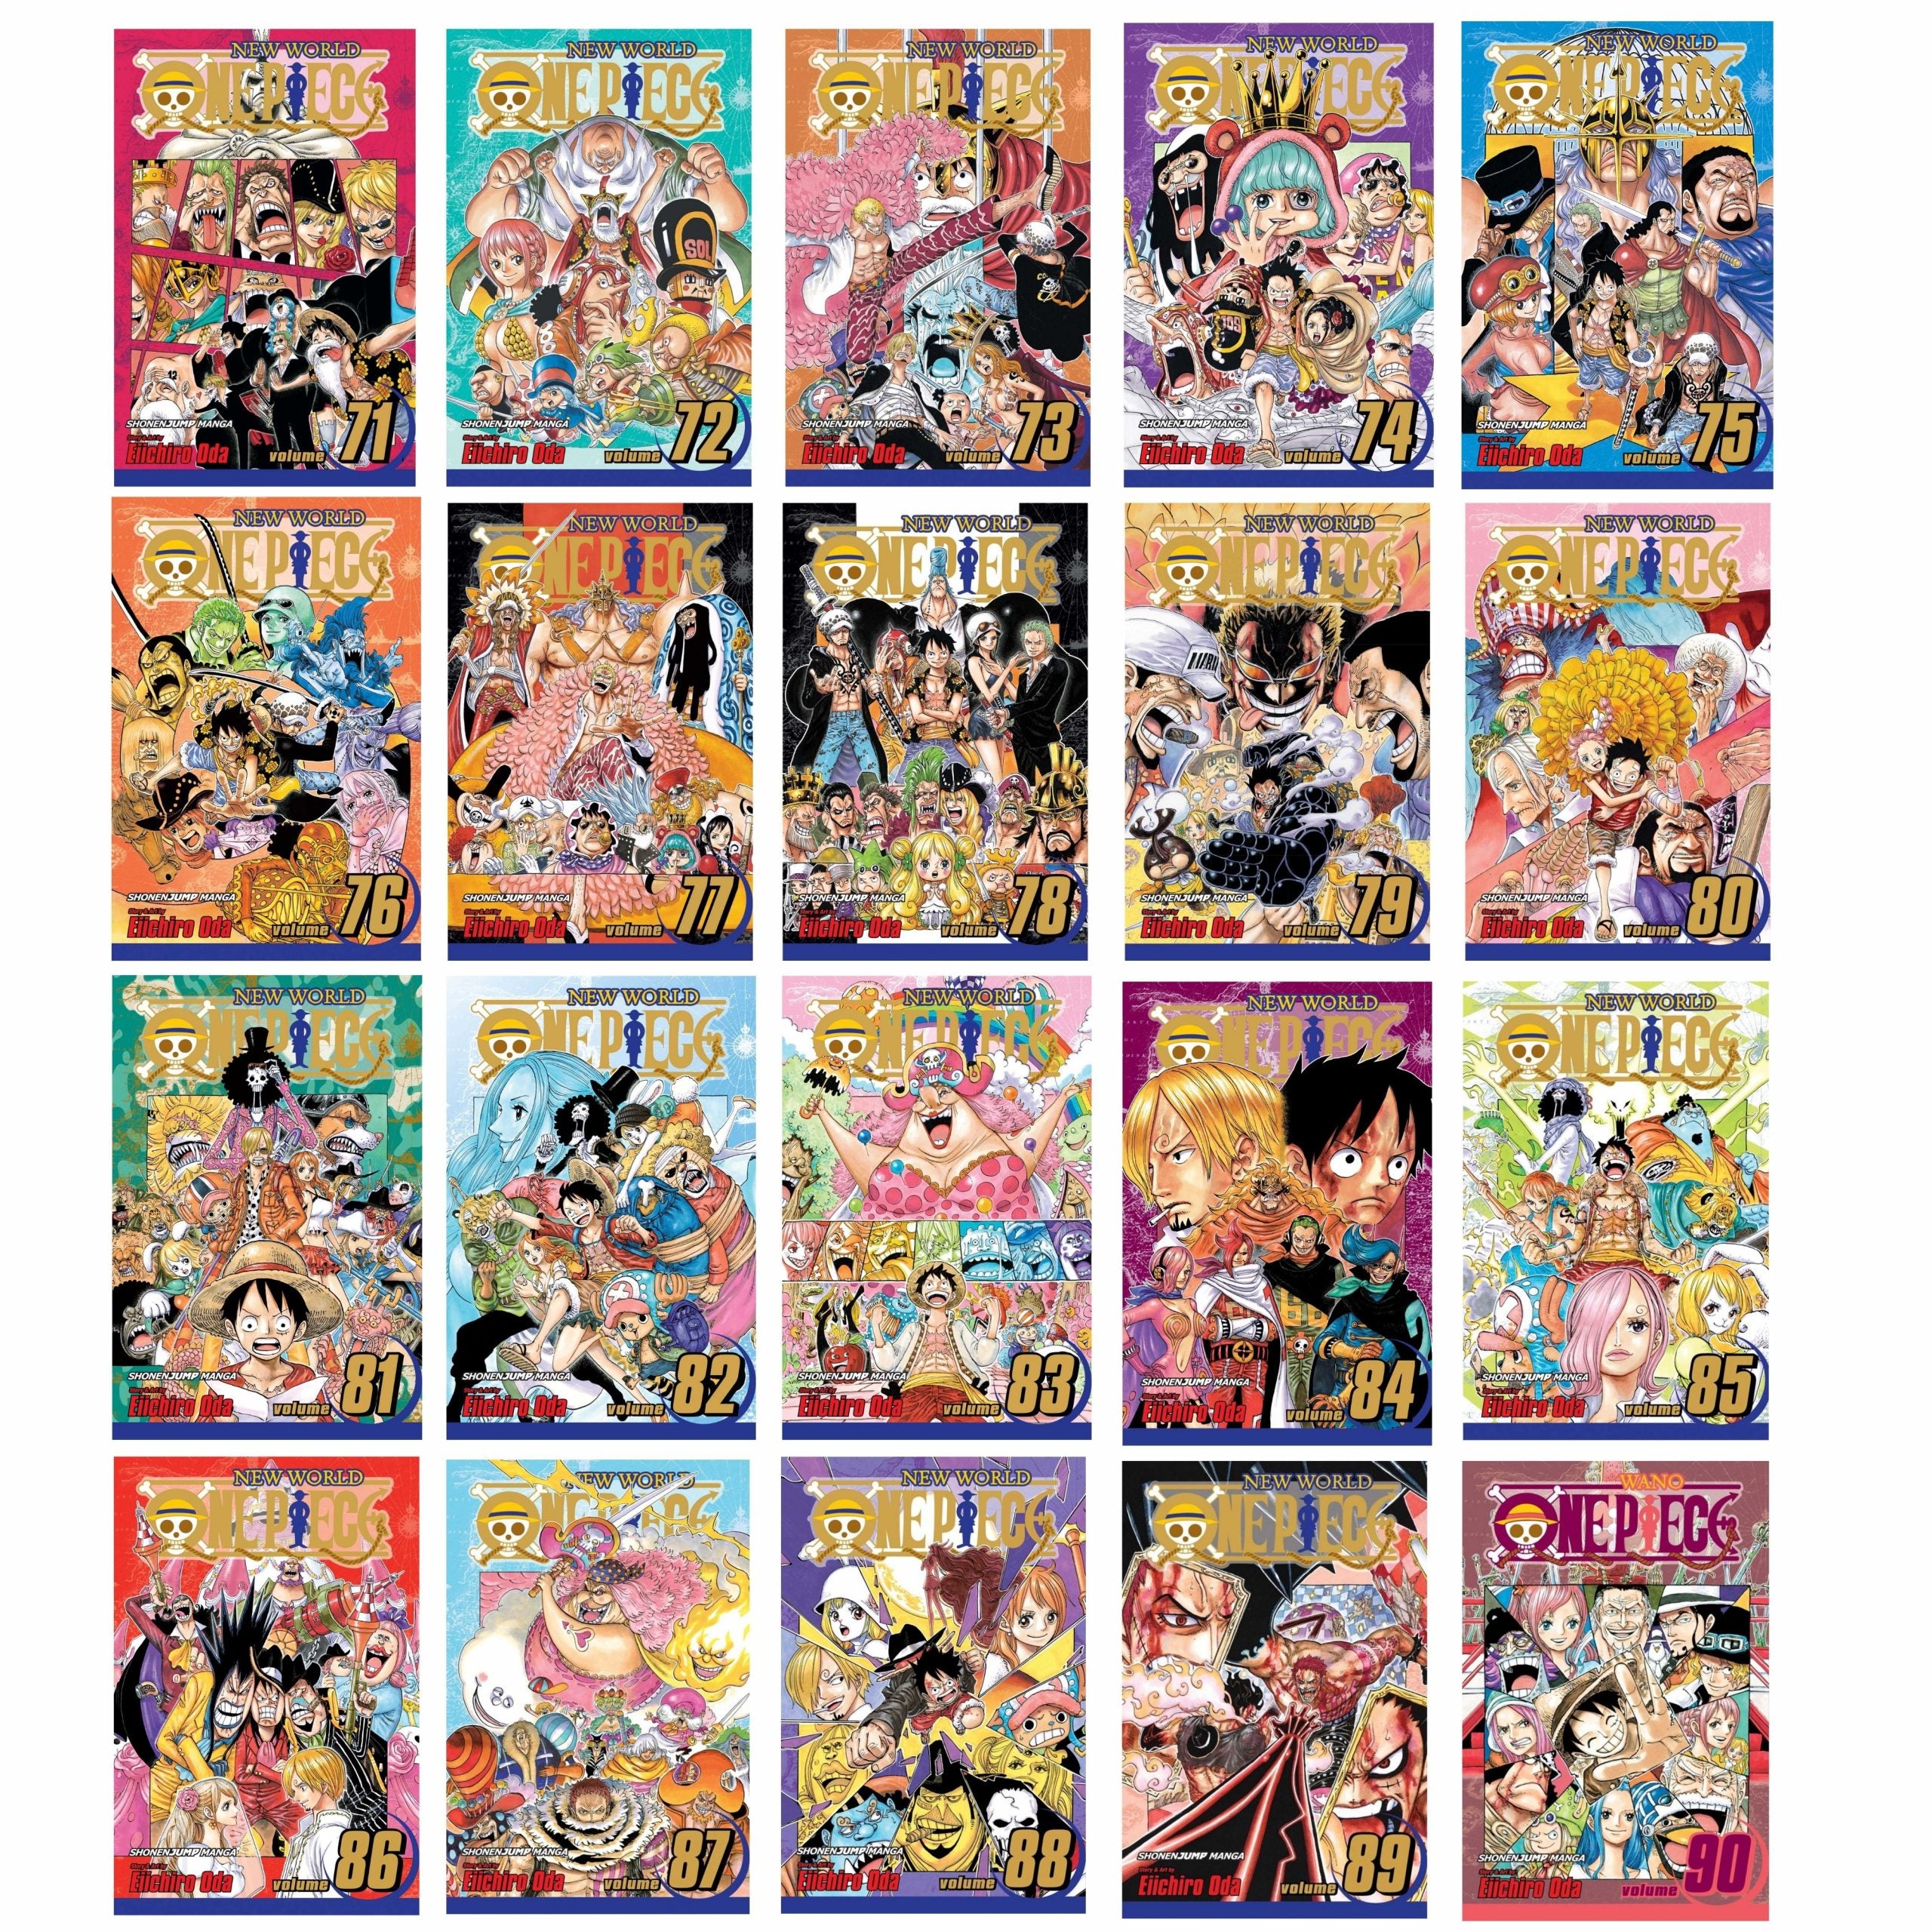 One Piece Coffret Vol. 71 à 80 - Dressrosa